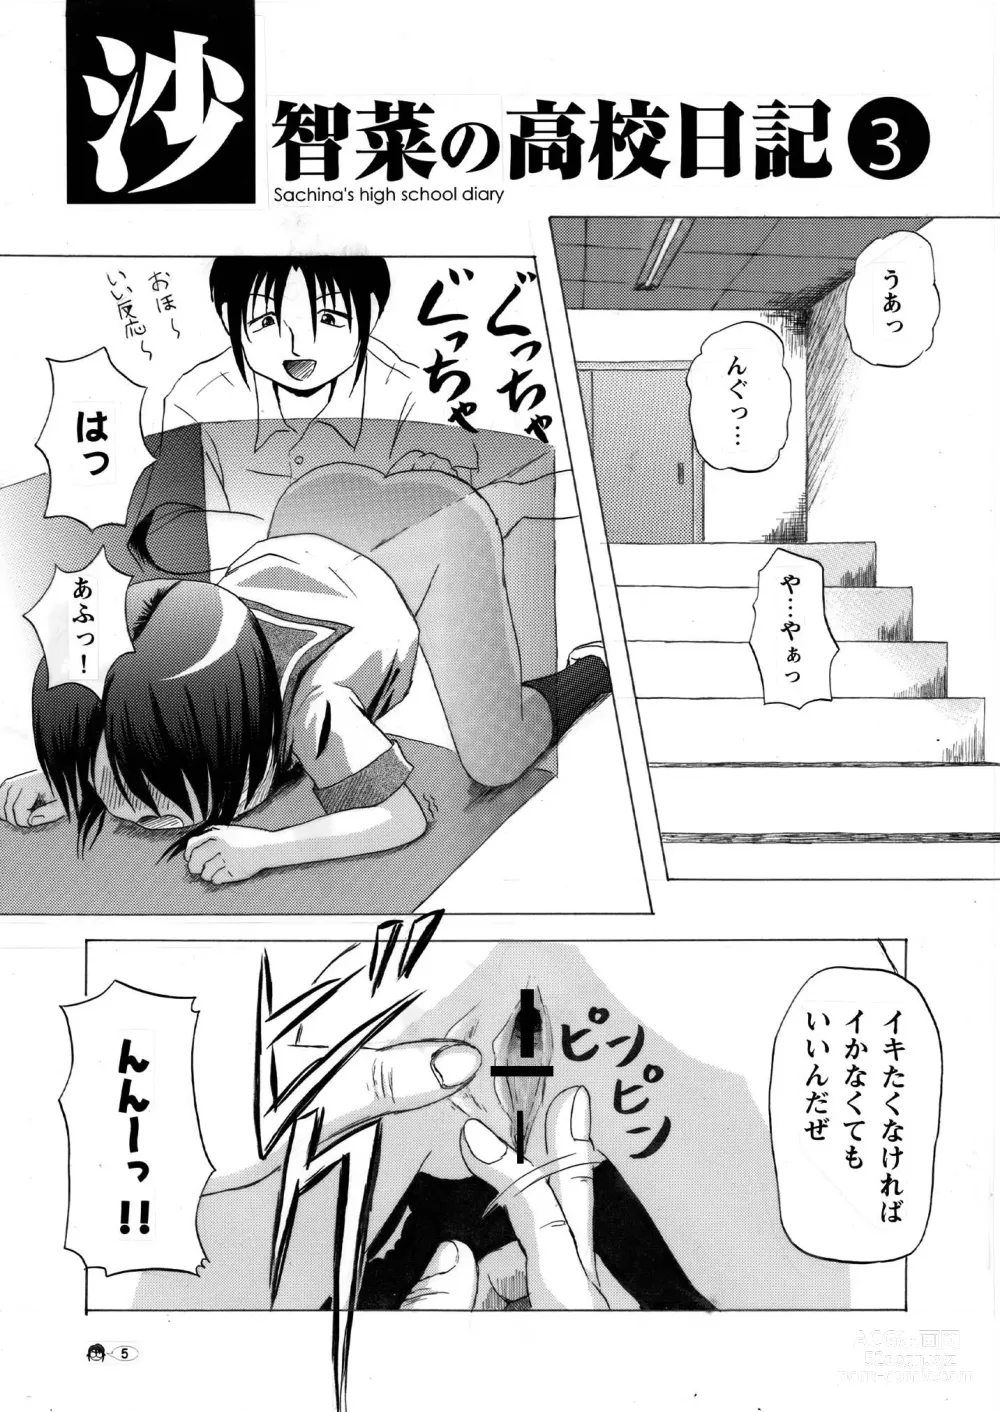 Page 5 of doujinshi Sachina no Koukou Nikki 3